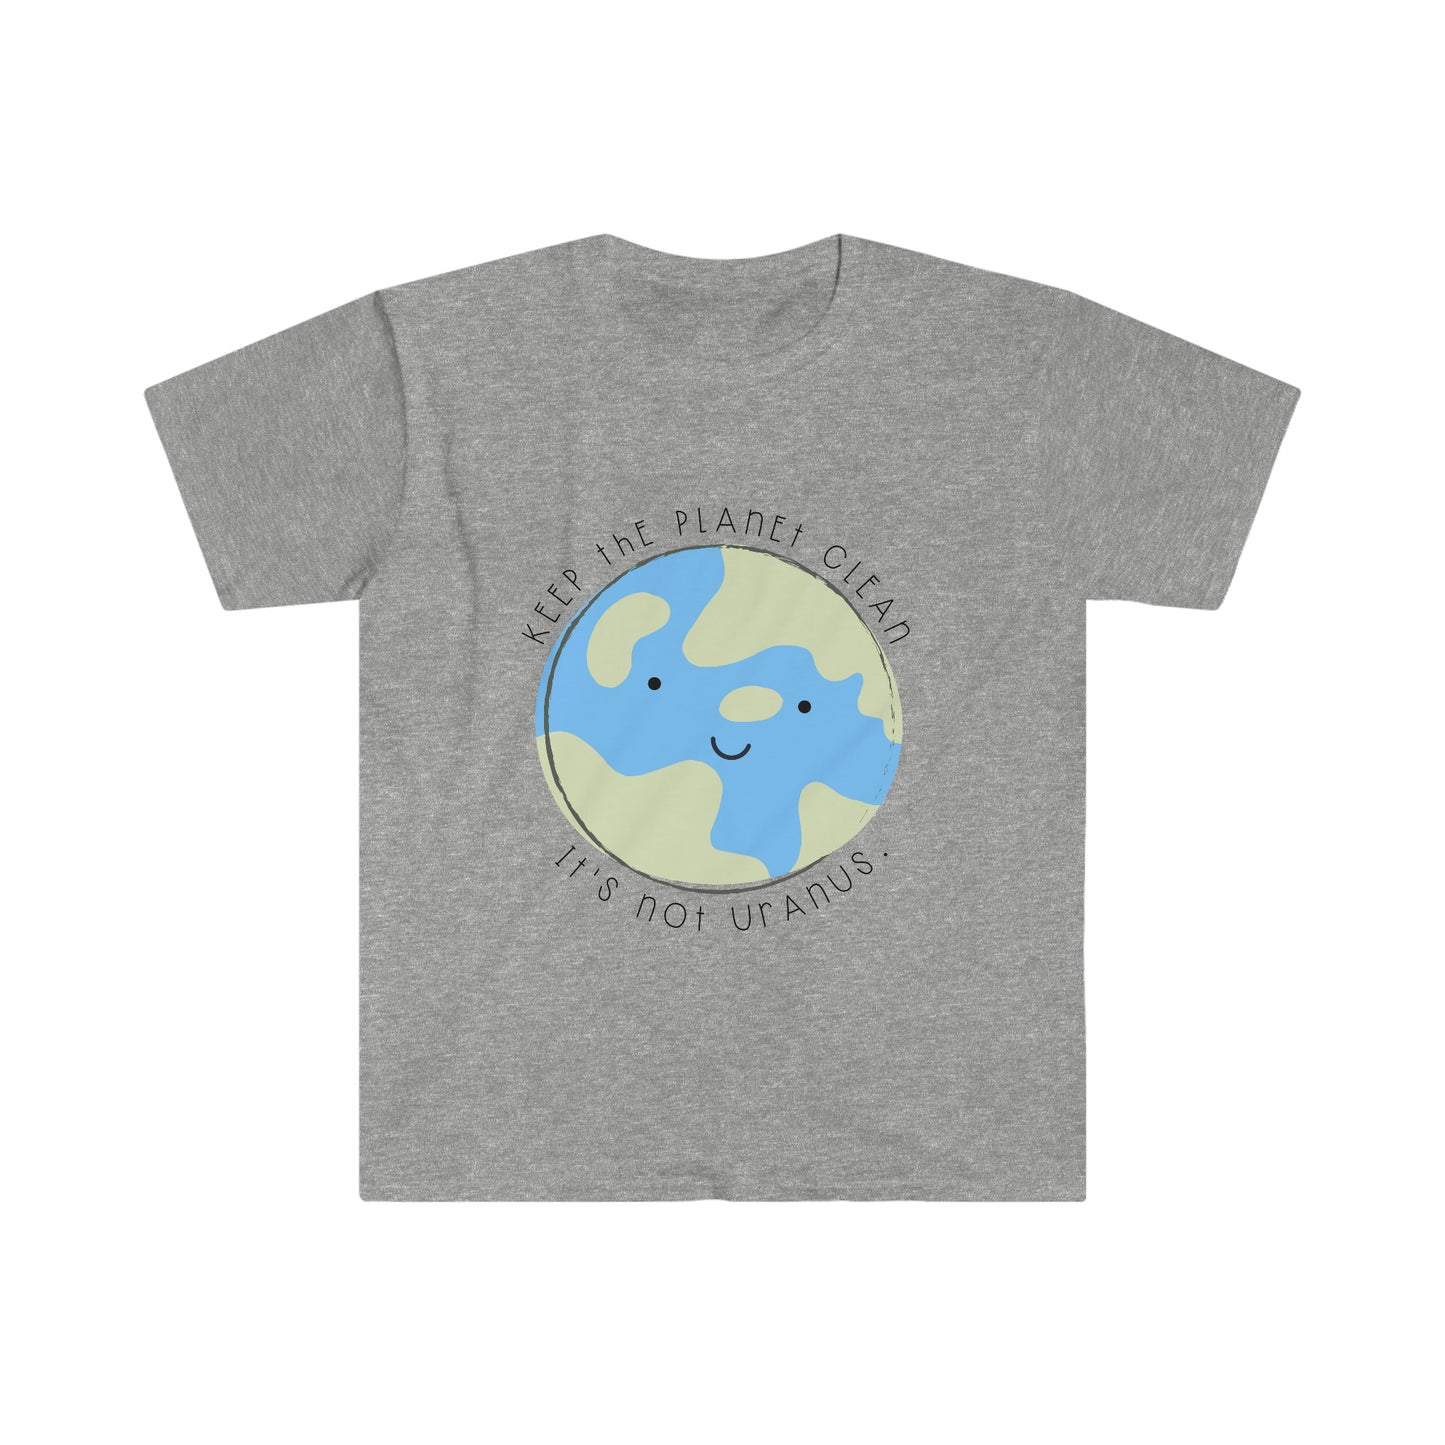 "Keep the Planet Clean, It's not Uranus" Teacher T-Shirt